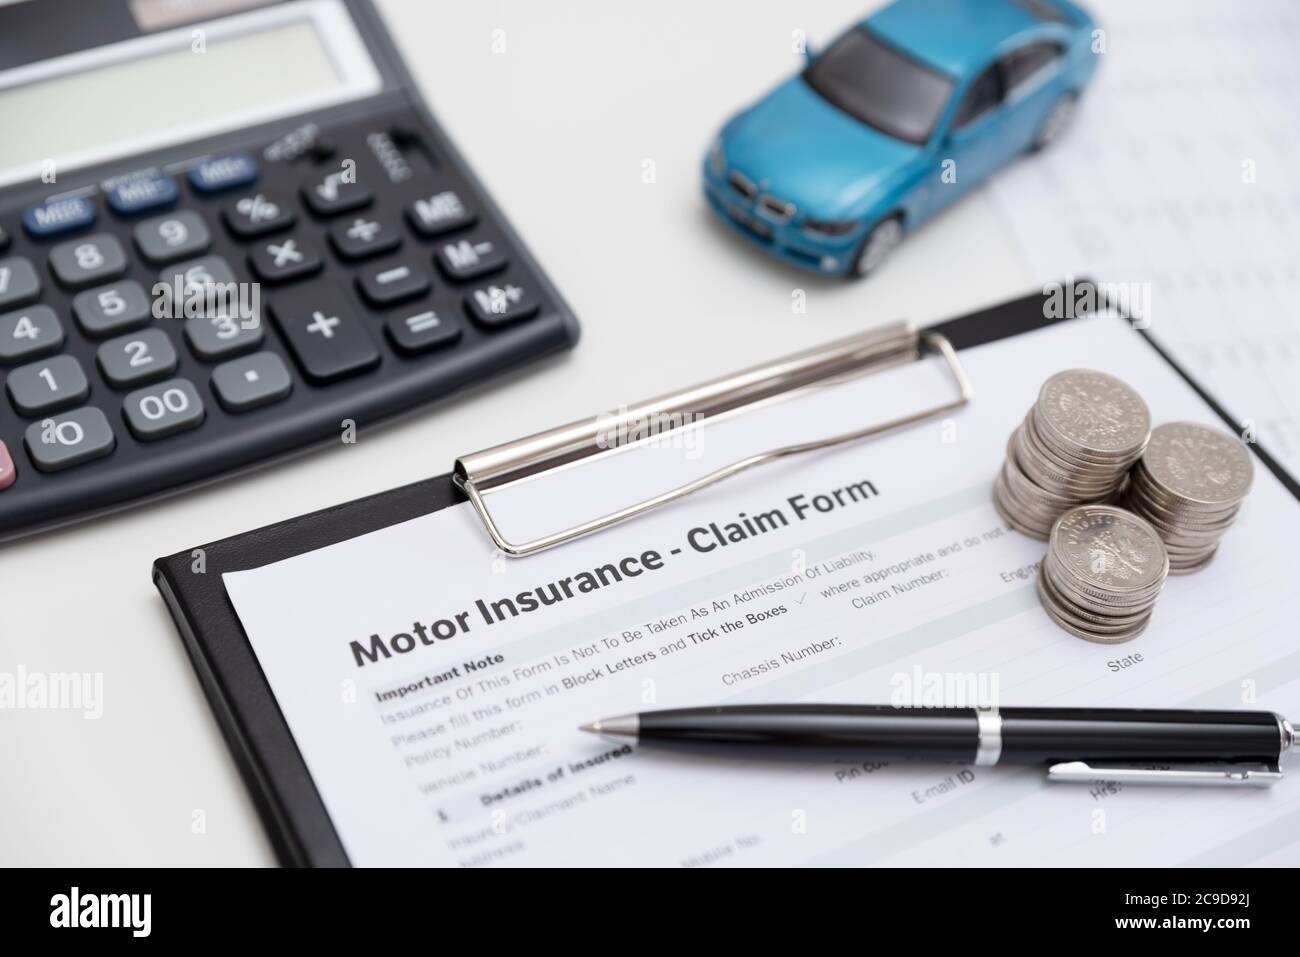 Motor o formulario de reclamación de seguros de coche con pila de monedas, calculadora y modelo de automóvil. Foto de stock